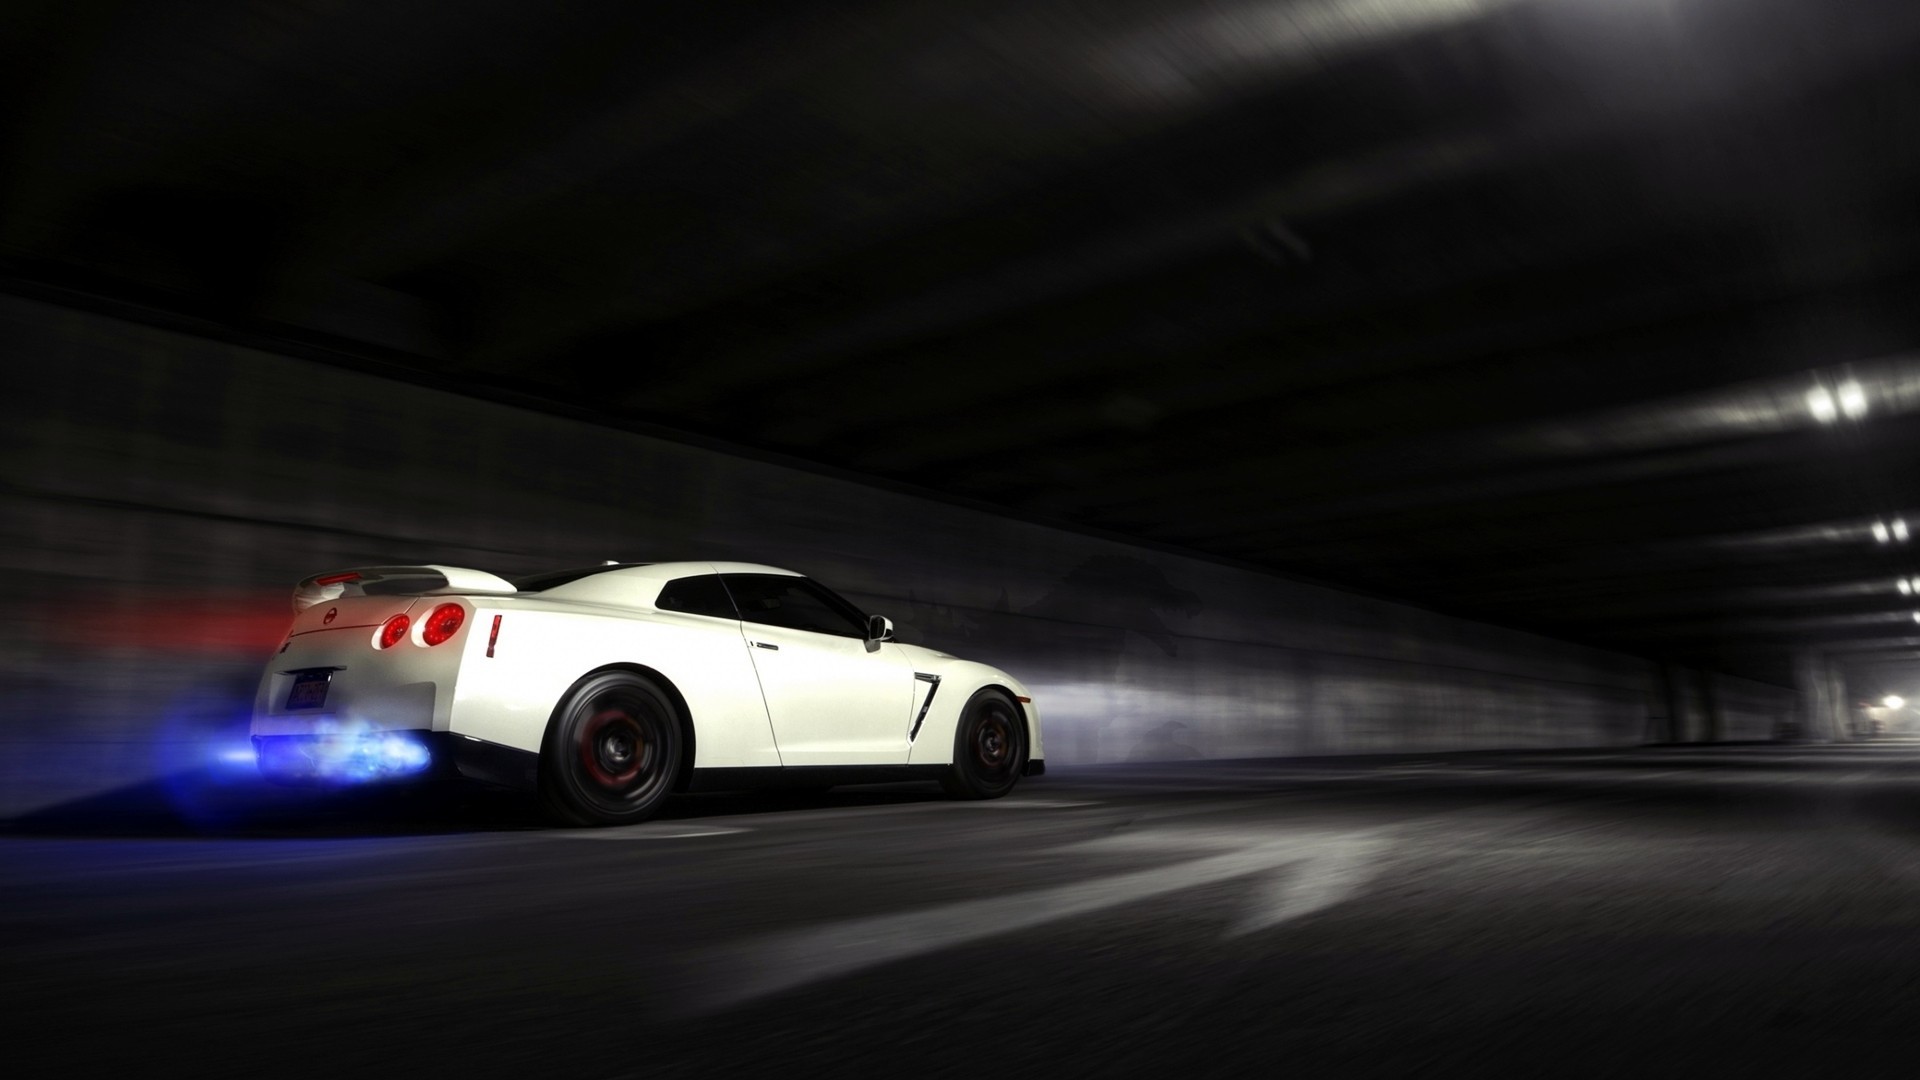 Nissan Skyline GTR Backfire Flame wallpaper | | 50718 |  WallpaperUP